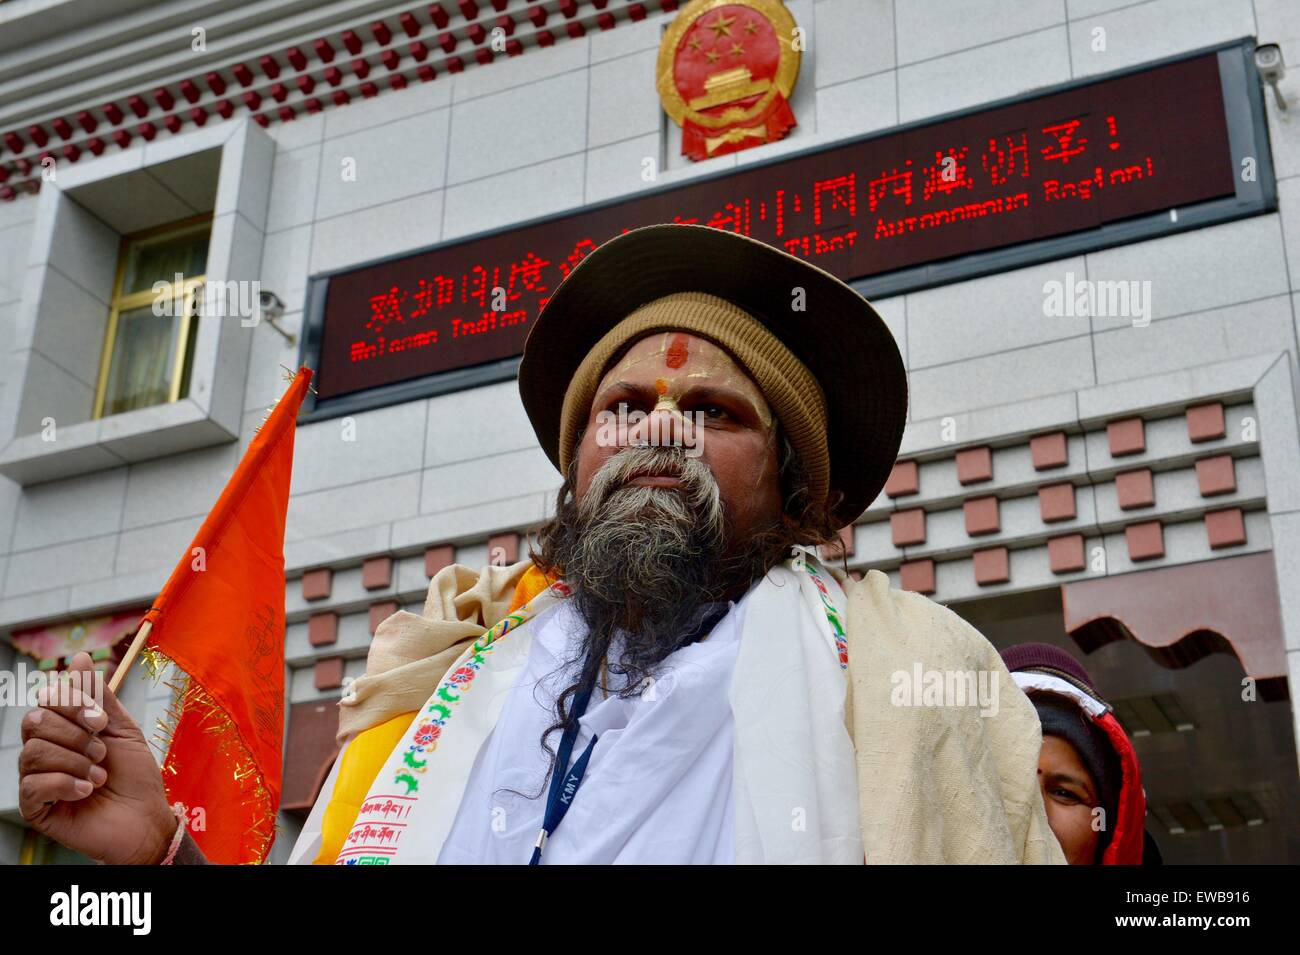 Yadong, Chine. 22 Juin, 2015. Un ressortissant indien des files d'attente pour entrer dans la région autonome du Tibet, au sud-ouest de la Chine, via Col Nathu La le 22 juin 2015. Chine le lundi a ouvert une nouvelle route le long du col Nathu La Himalaya pour les pèlerins de l'Inde voyager au Tibet, afin de promouvoir davantage les échanges religieux entre les deux pays. Les ressortissants indiens ont fait le pèlerinage au Tibet chaque année depuis 1981. La Chine a accueilli près de 80 000 pèlerins indiens dans la dernière décennie seulement. © Purbu Zhaxi/Xinhua/Alamy Live News Banque D'Images